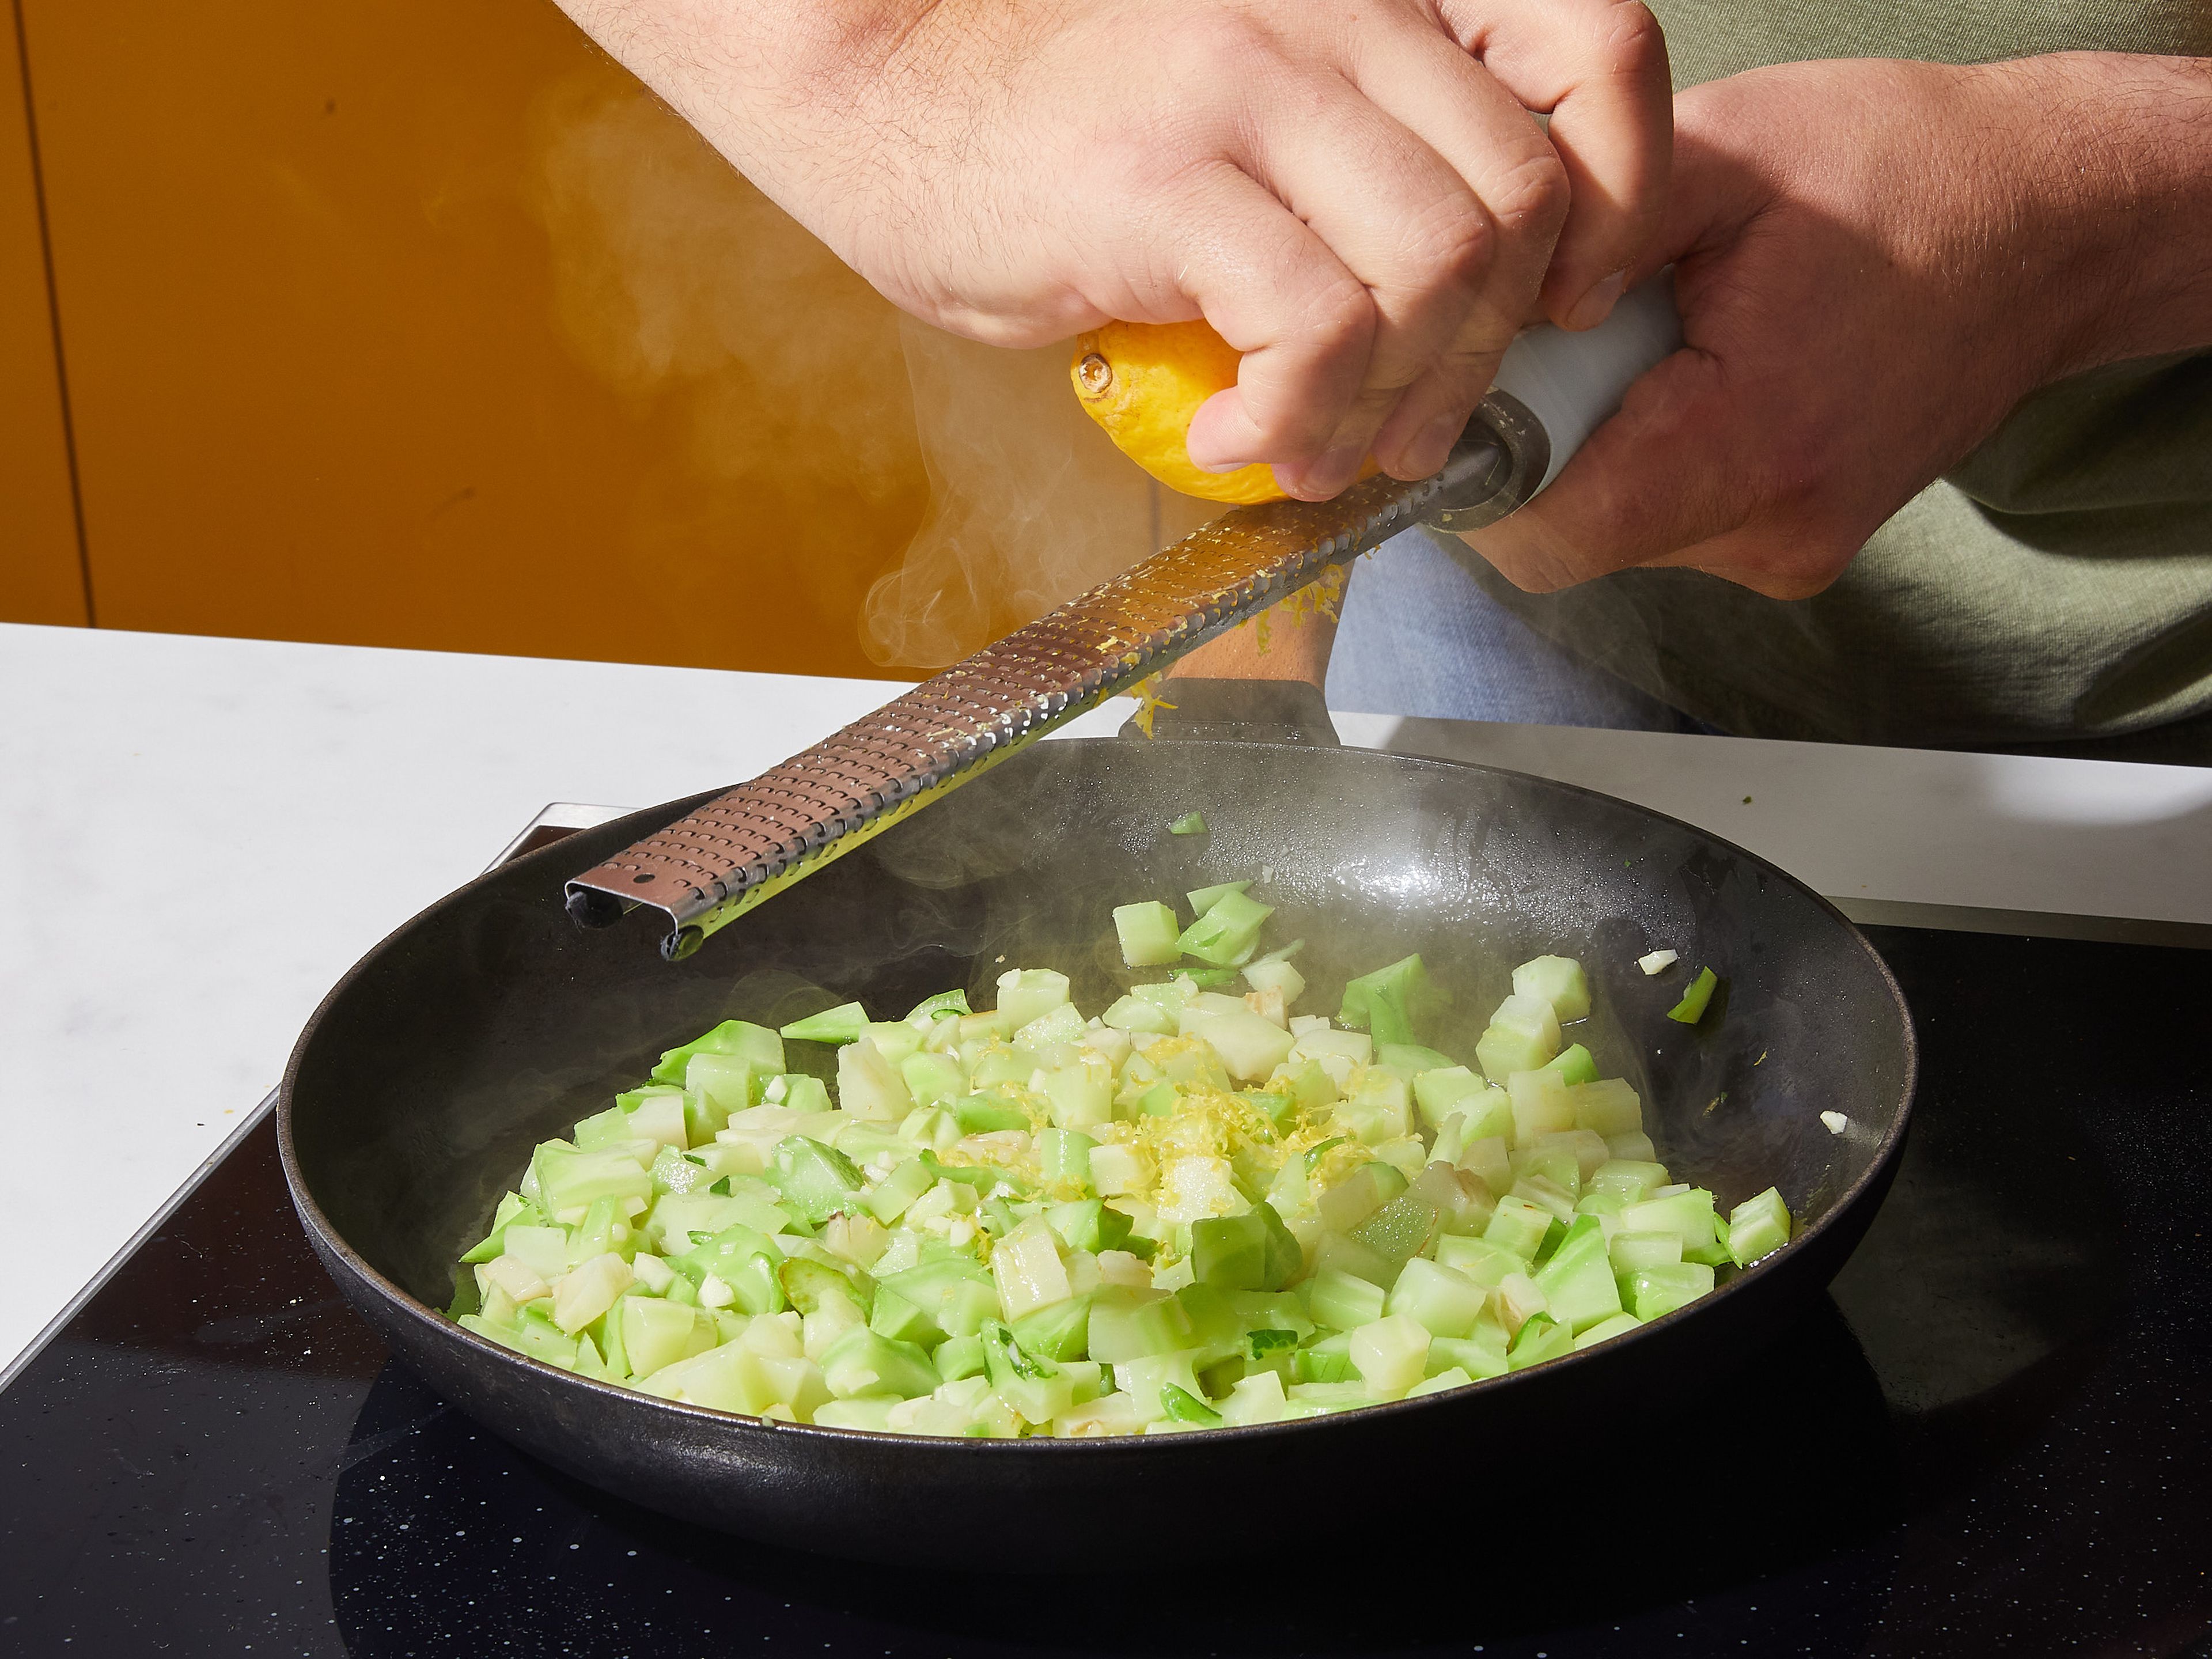 Pfanne auswischen und auf mittlere Temperatur erhitzen. Olivenöl hinzugeben, dann Knoblauch und Brokkoli hinzufügen und ca. 2 Min. braten. Vom Herd nehmen und mit Zitronenschale, Zitronensaft, Salz und Pfeffer würzen.